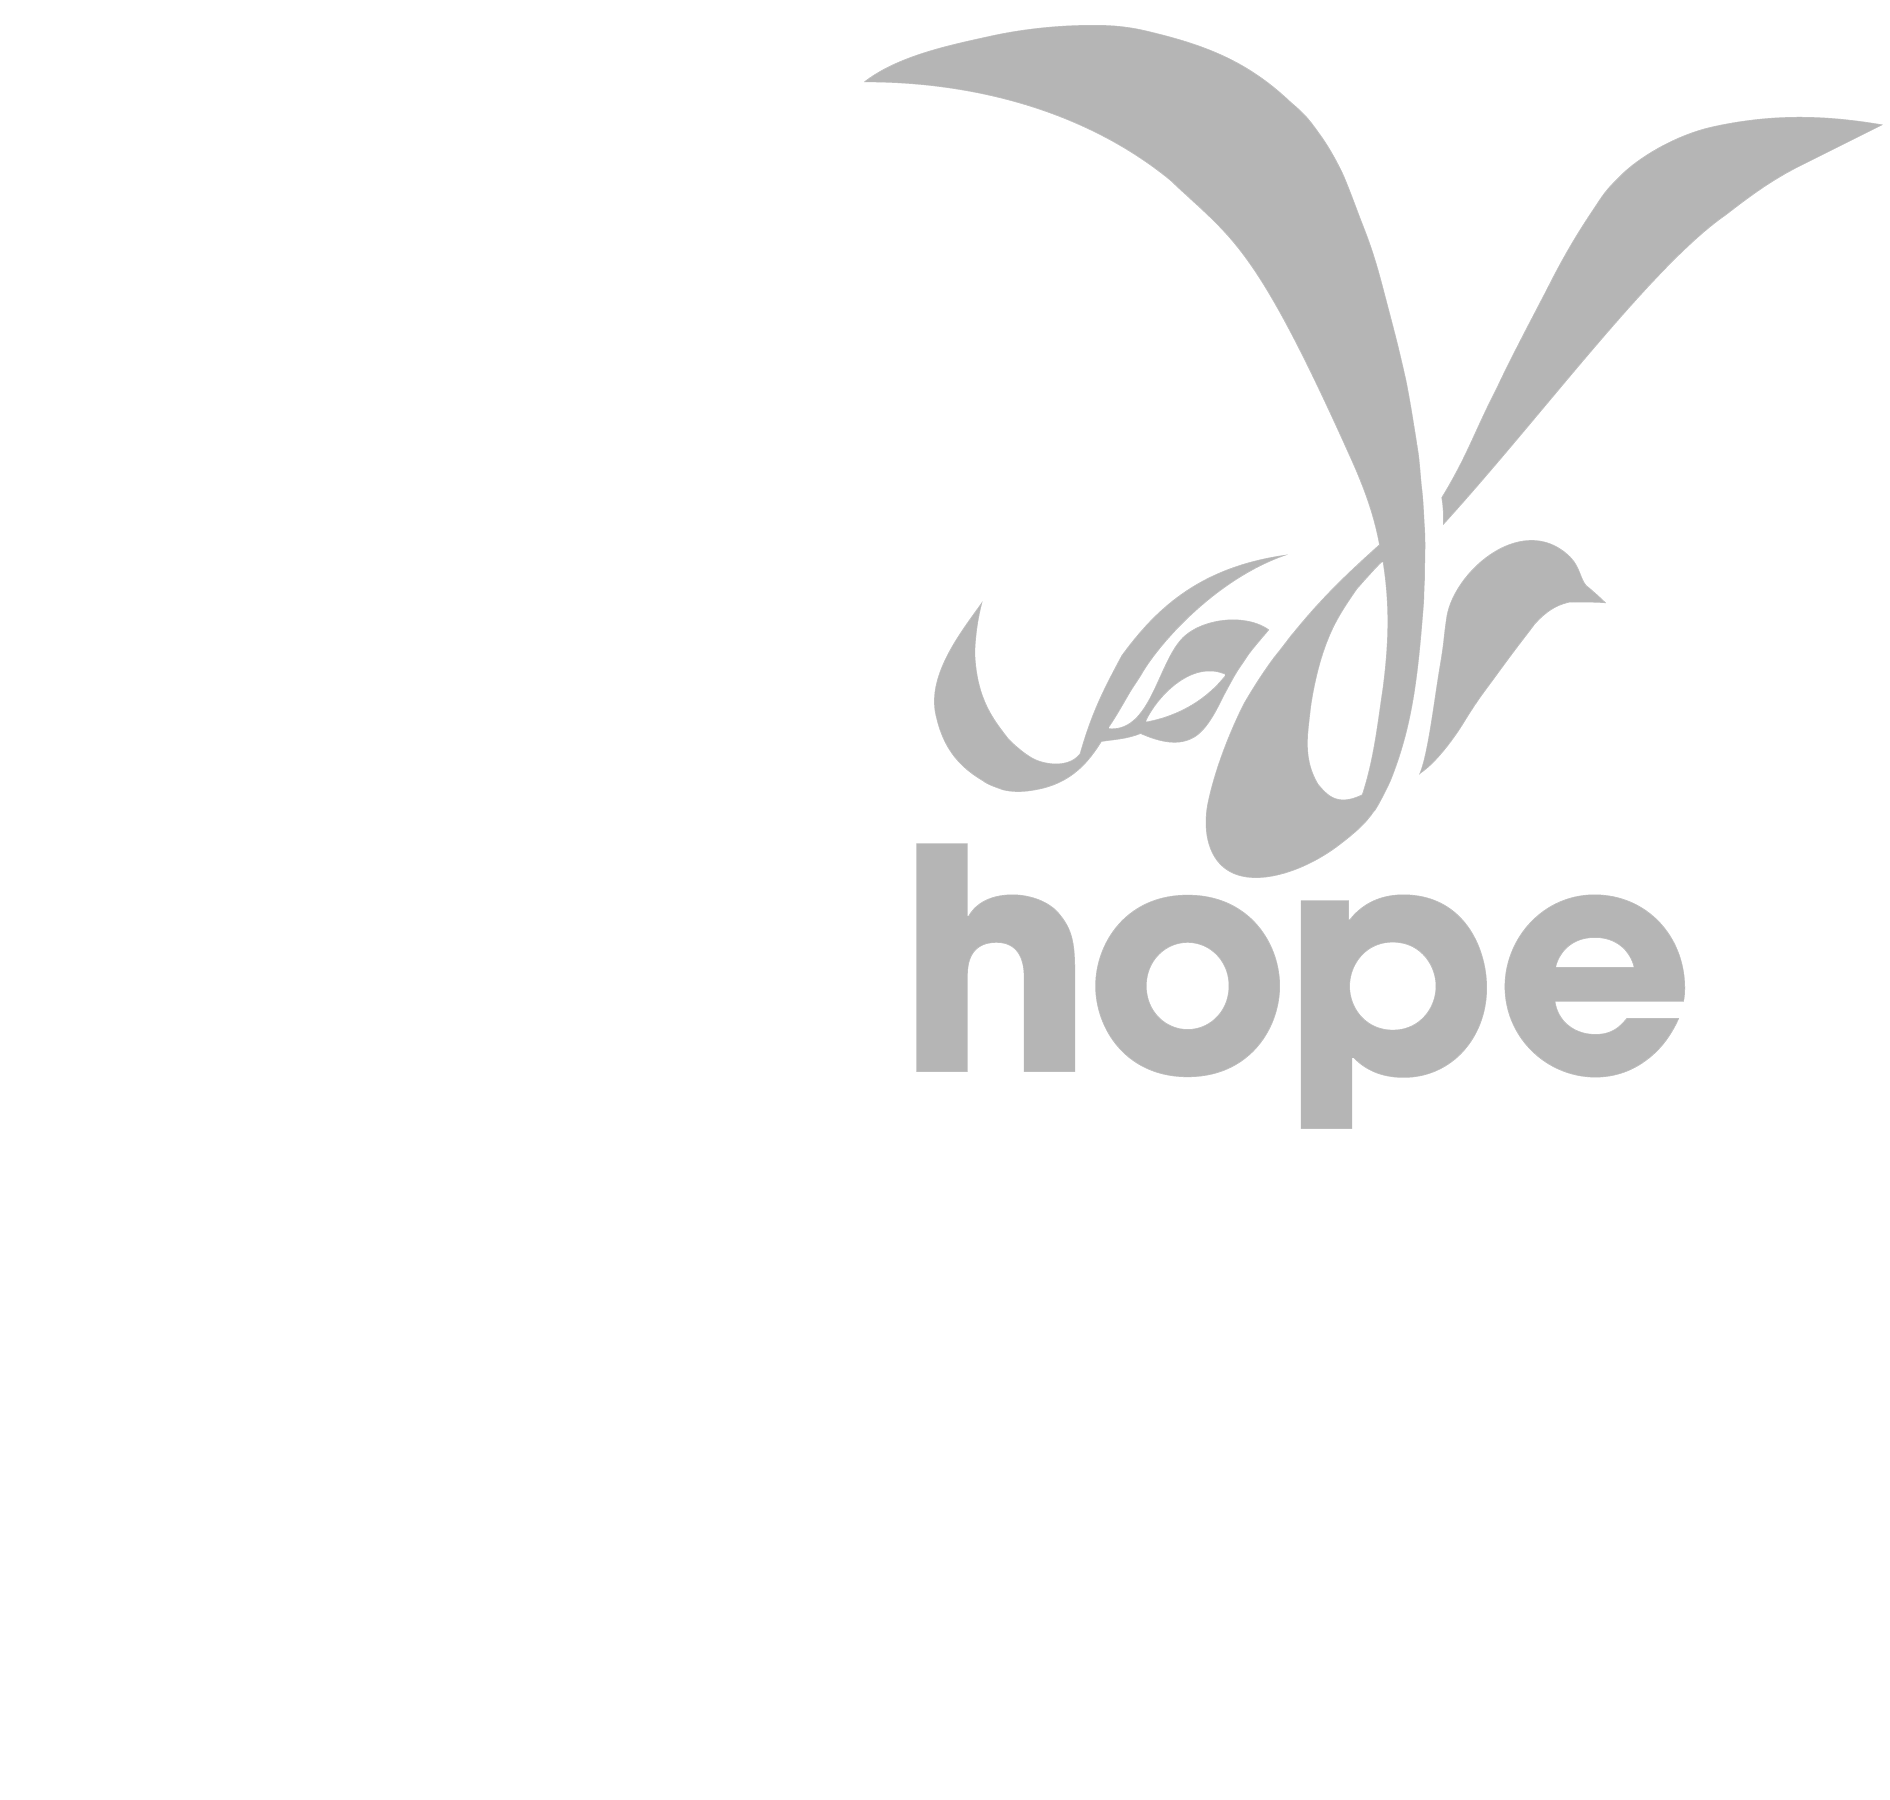 Global Hope